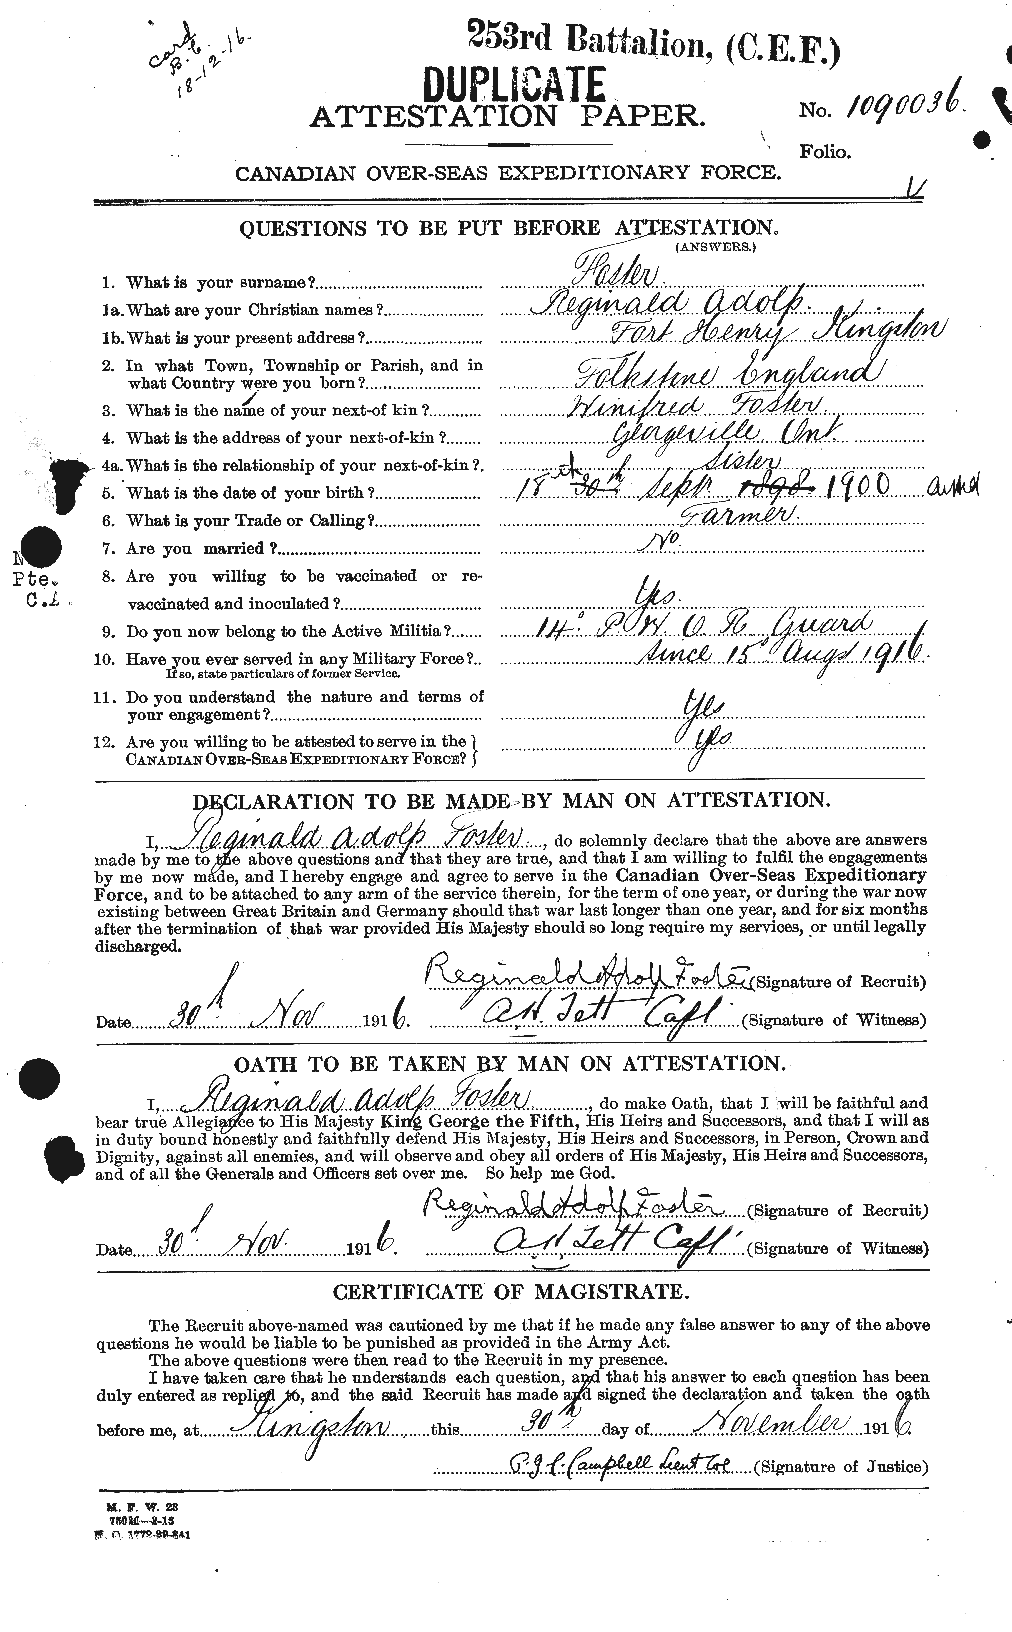 Dossiers du Personnel de la Première Guerre mondiale - CEC 333450a